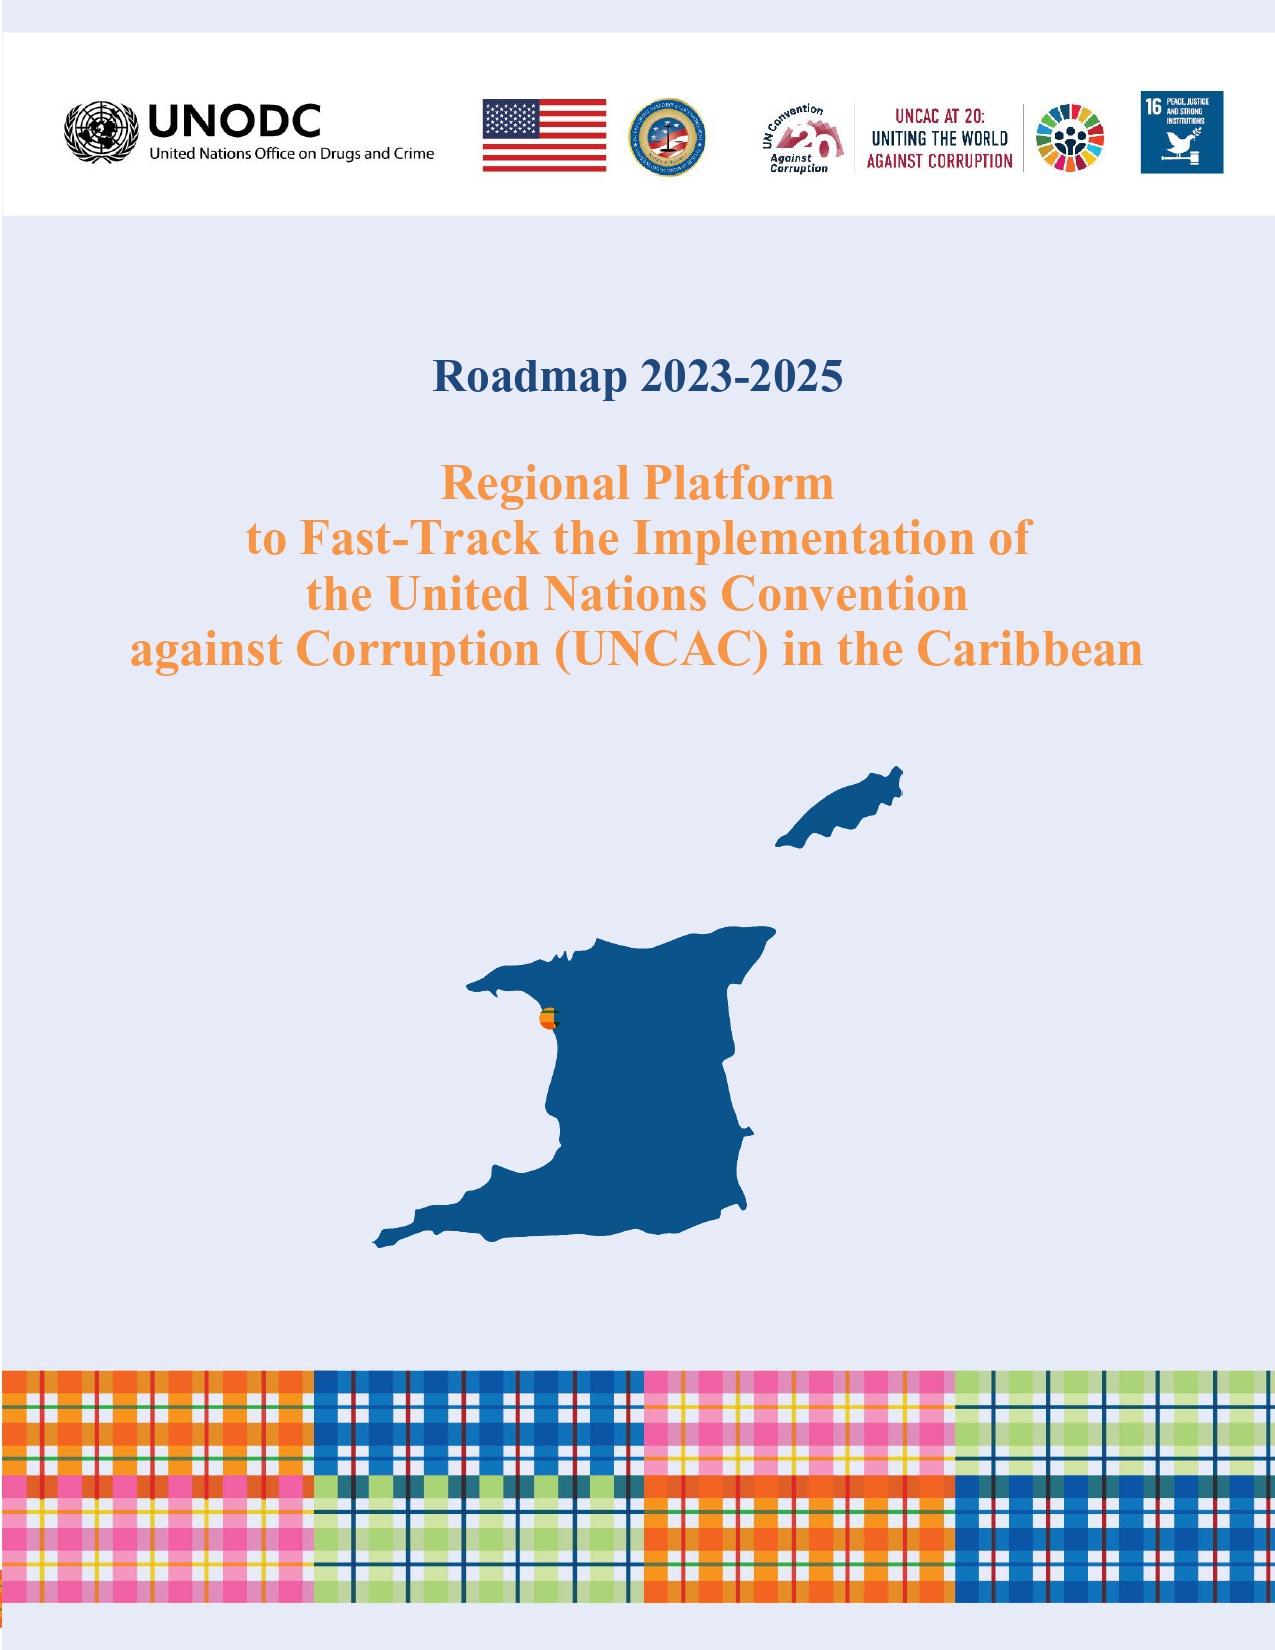 Portada de la hoja de ruta de la Plataforma Regional para Acelerar la Implementación de la UNCAC en el Caribe